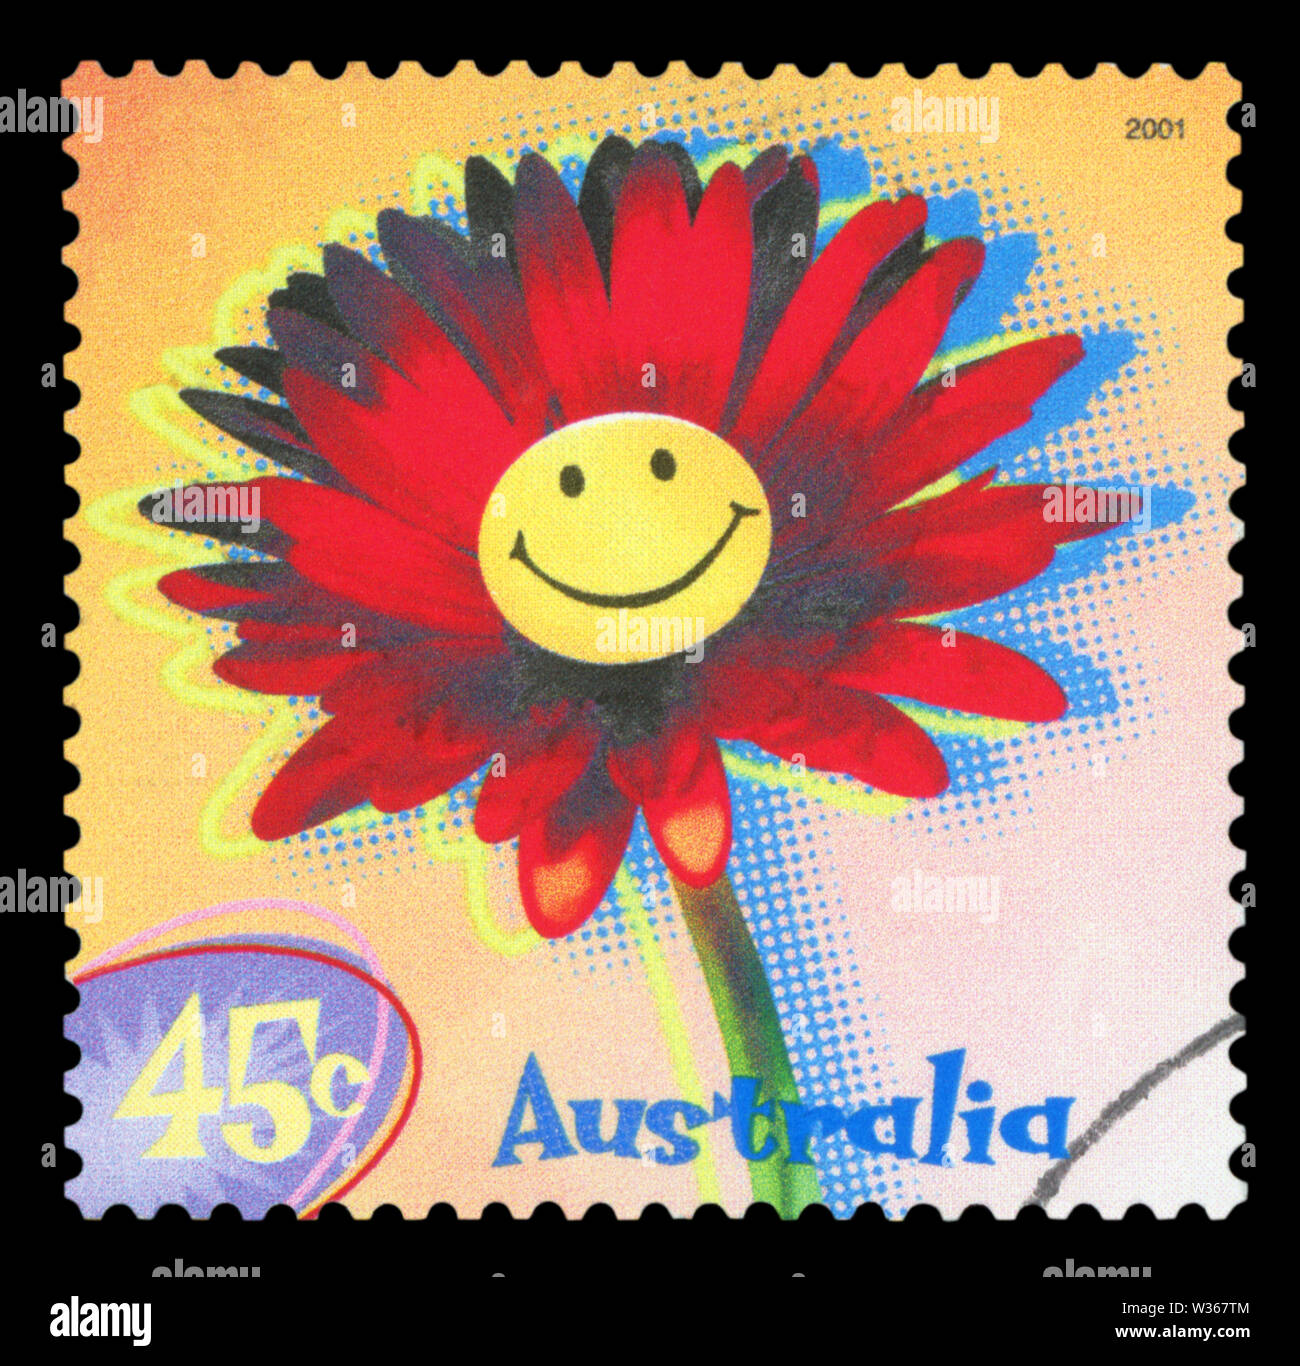 Australien - ca. 2001: einen Stempel in Australien gedruckten zeigt die Abbildung der smiley Flower, ca. 2001. Stockfoto